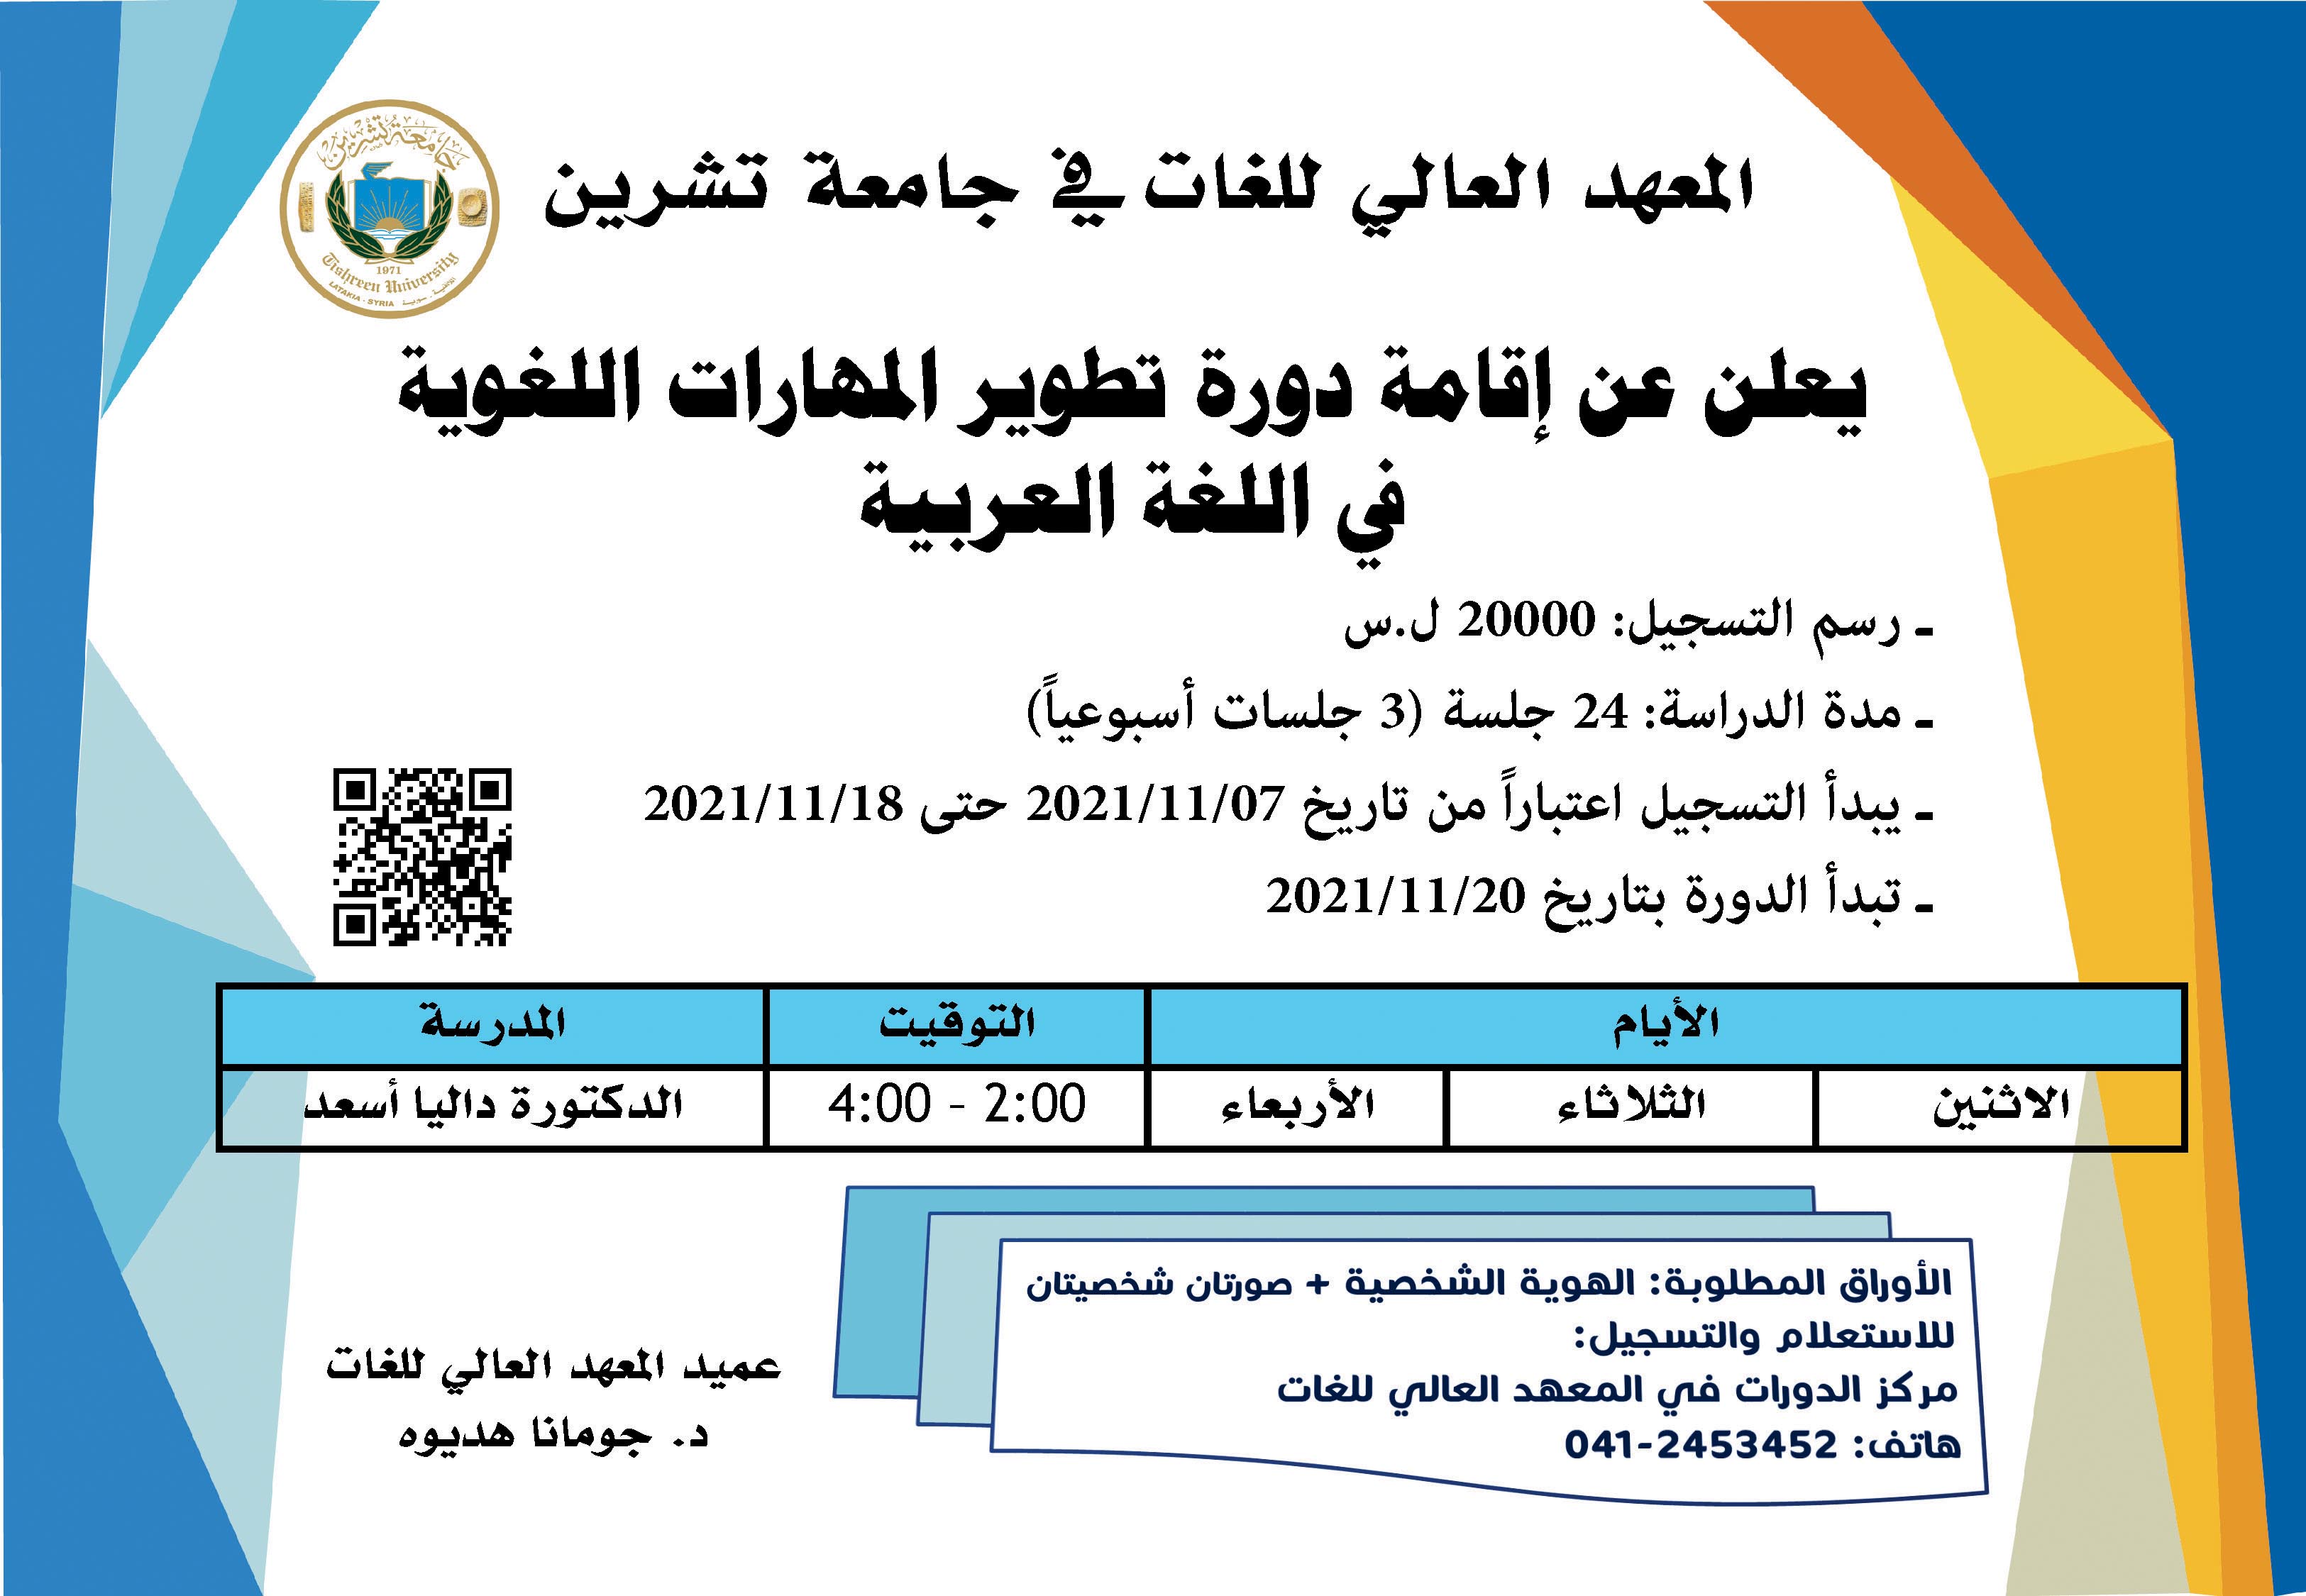 العهد العالي للغات يعلن عن إقامة دورة تطوير المهارات اللغوية في اللغة العربية التي تبدأ بتاريخ 20-11-2021